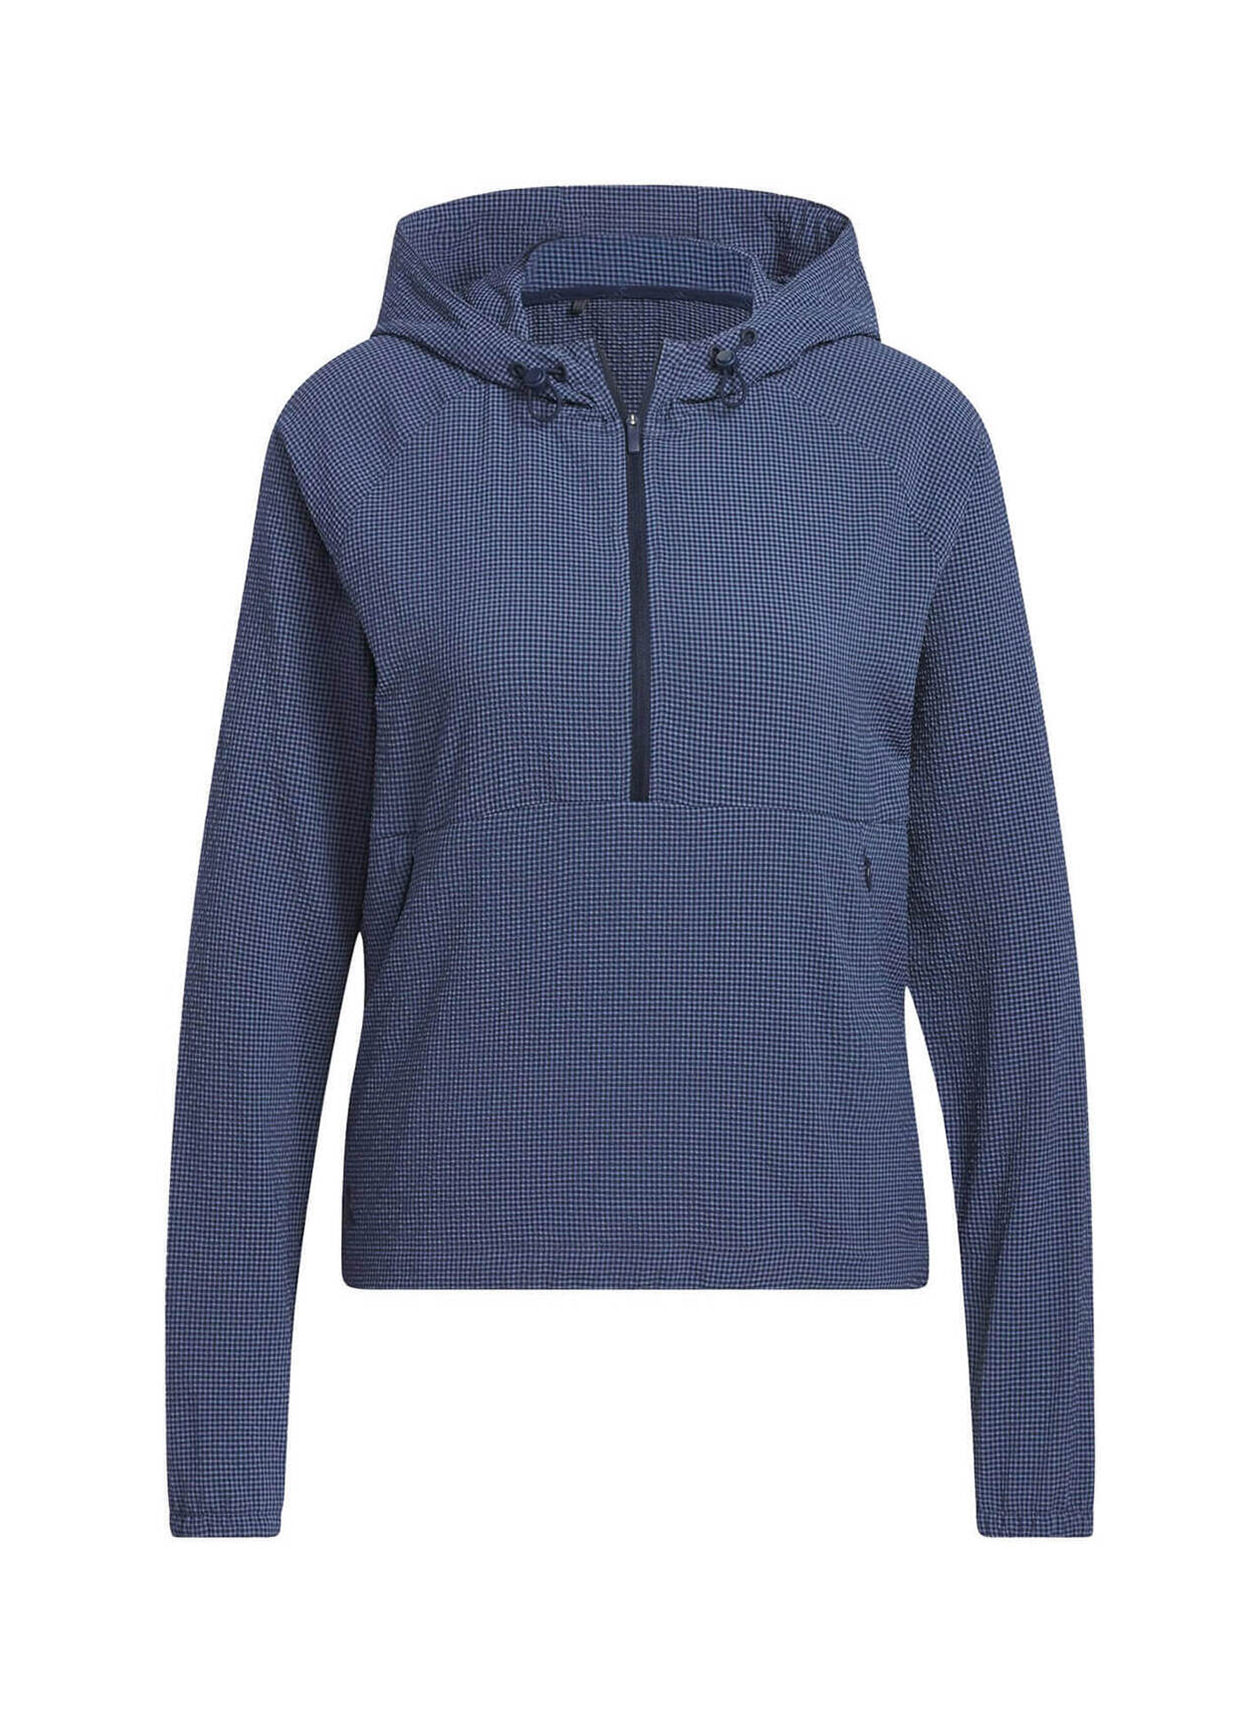 Women's Textured Half-Zip Hooded Collegiate Navy | Adidas